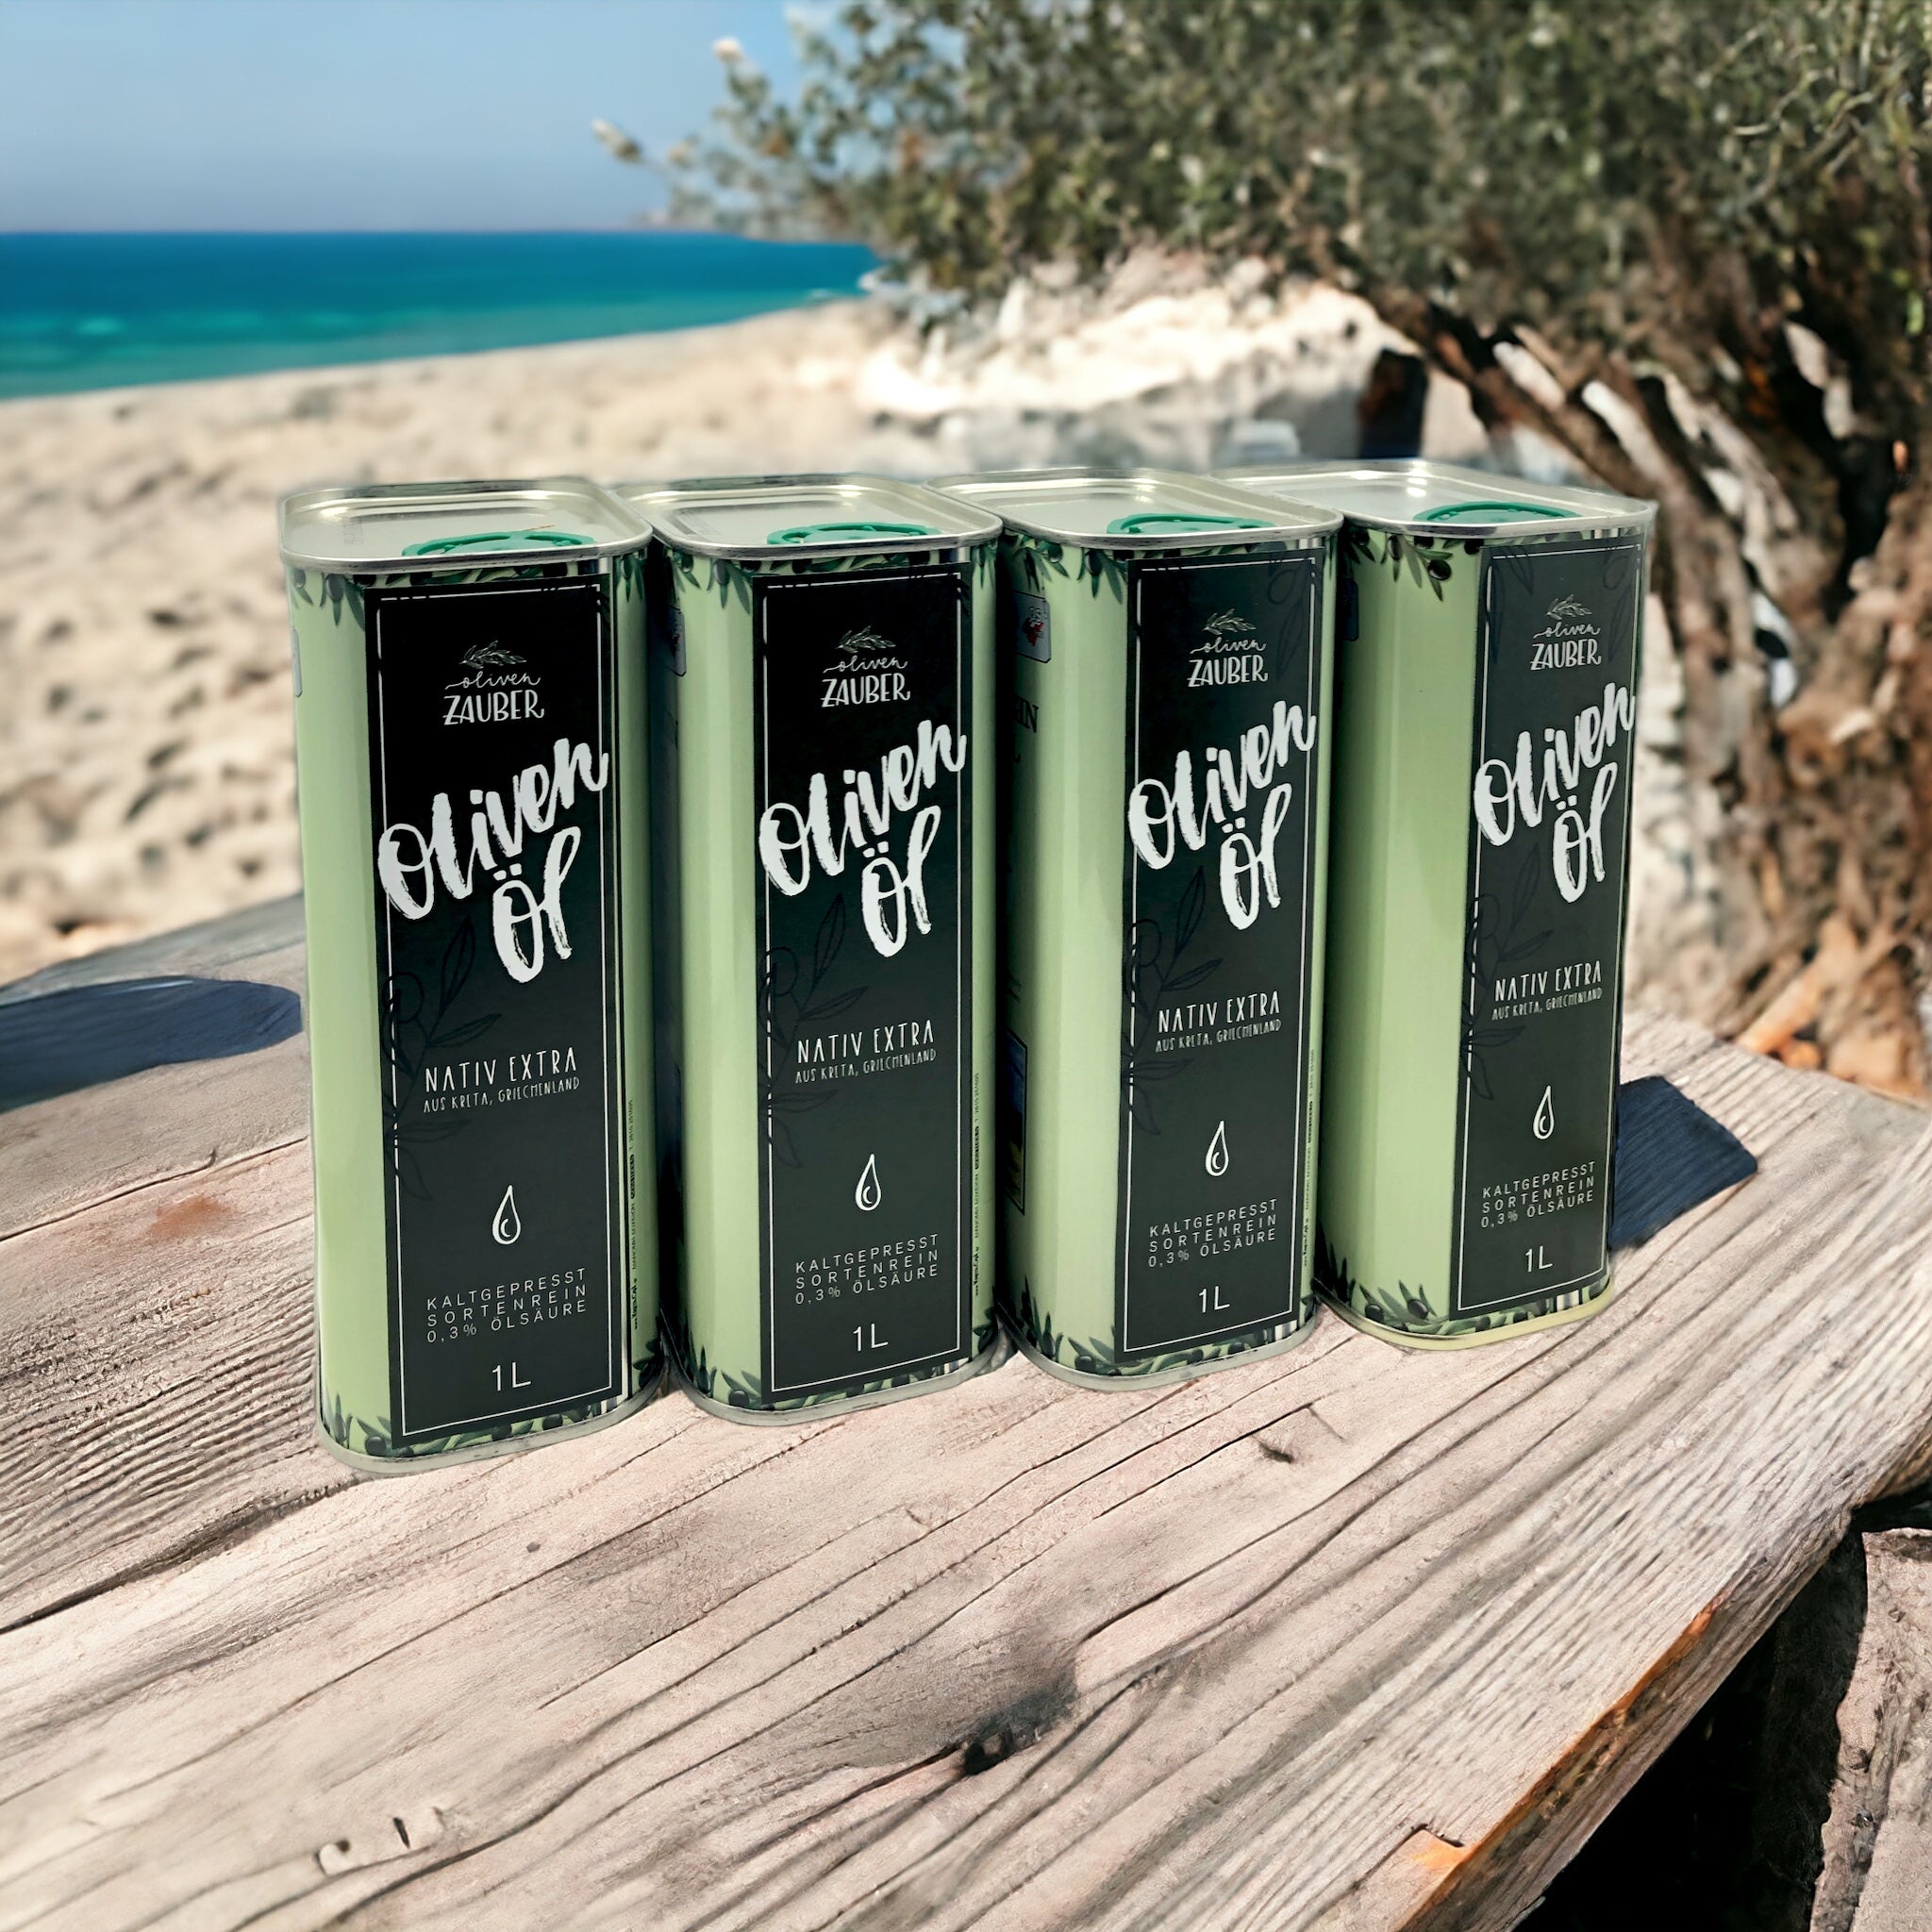 Griechisches Olivenöl nativ extra aus Kreta – 1000ml Vorratspack - OlivenZauber - Olivenöl neu erleben